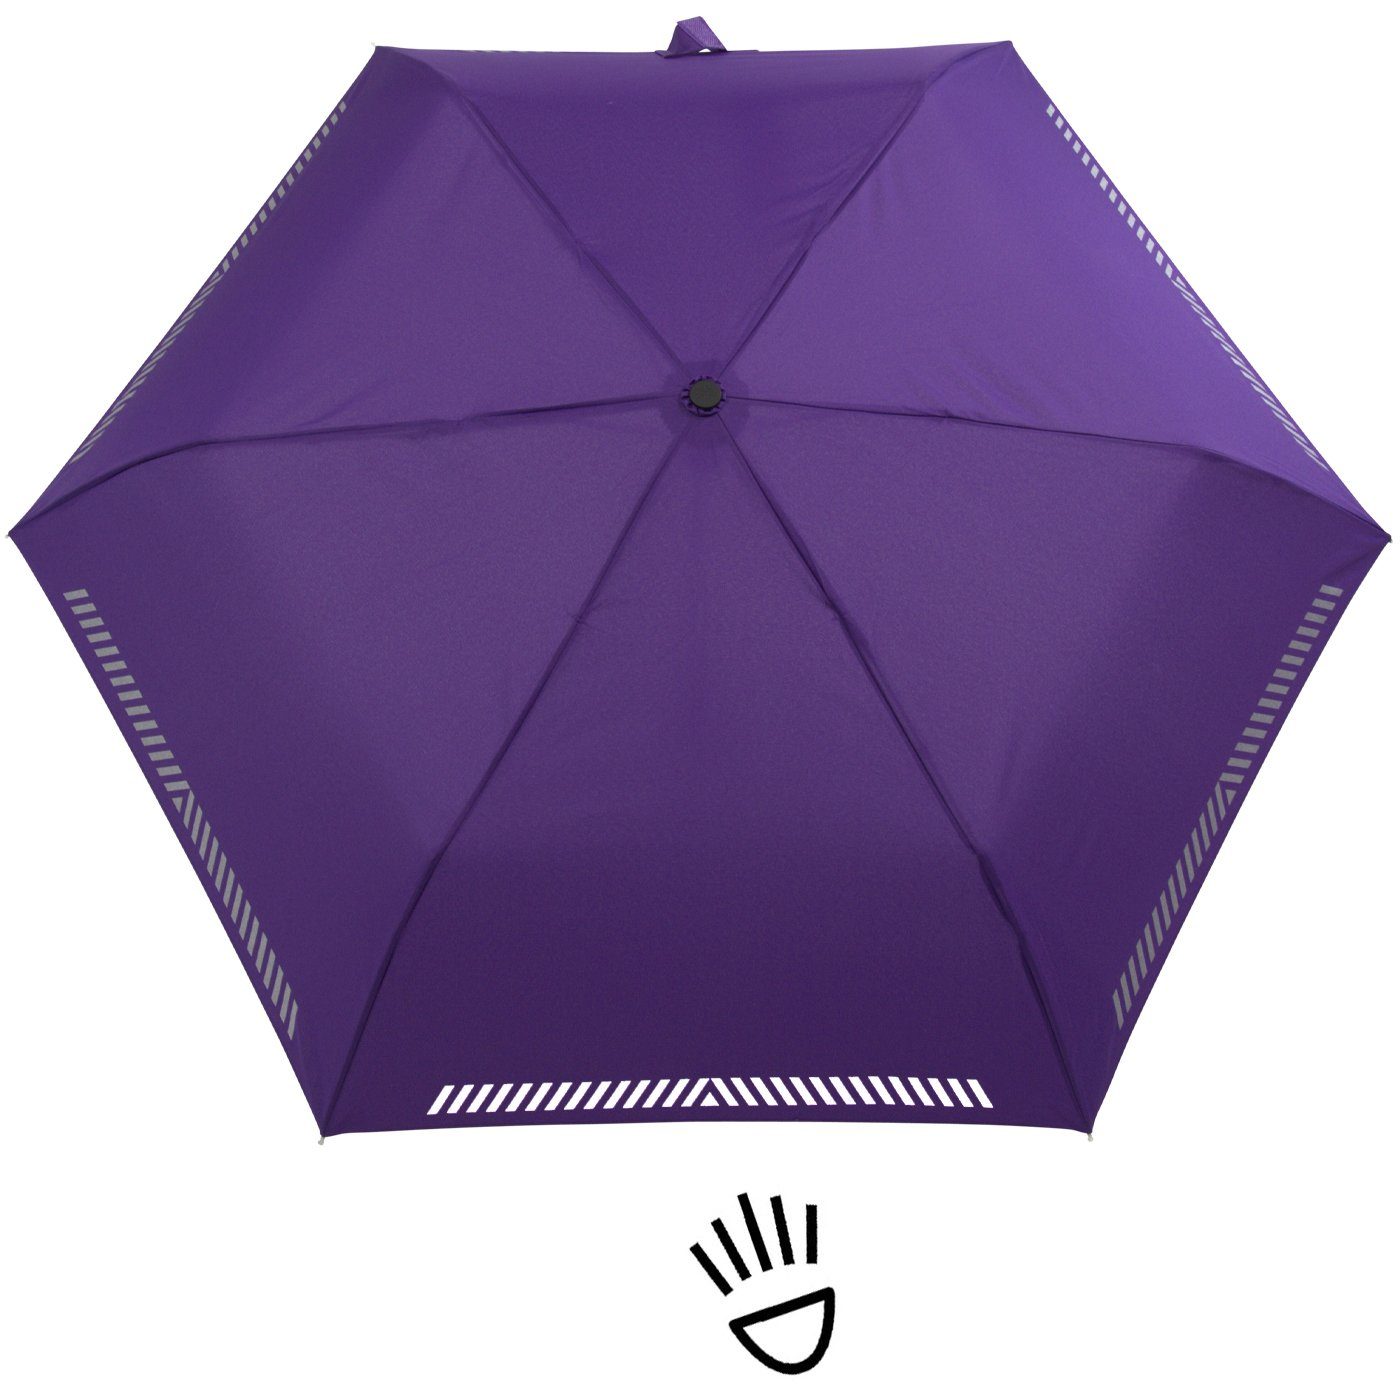 iX-brella Taschenregenschirm Kinderschirm mit Sicherheit durch berry reflektierend, - Reflex-Streifen Auf-Zu-Automatik